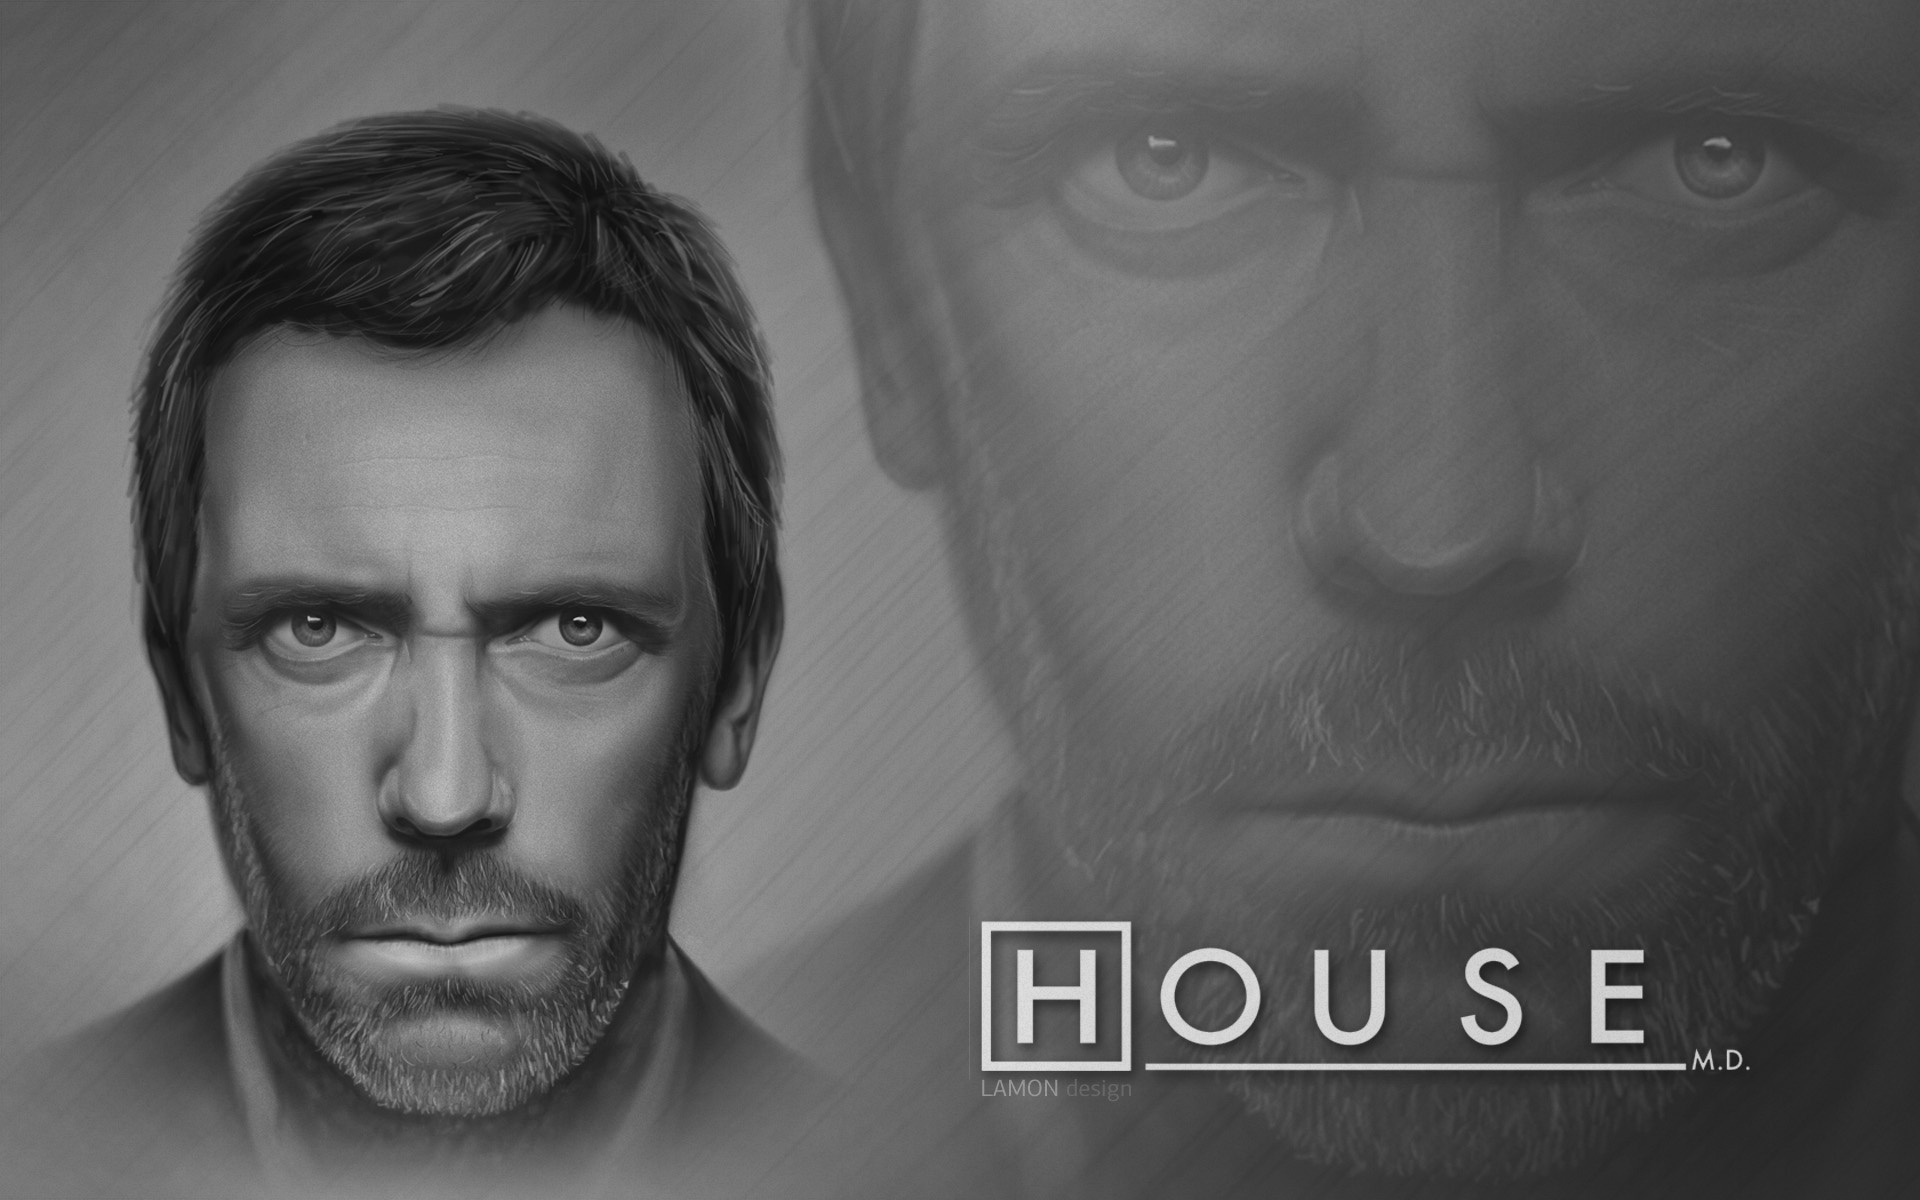 Портрет Хью Лори / Hugh Laurie из сериала *Доктор Хаус / House M.D.* (Lamon design)